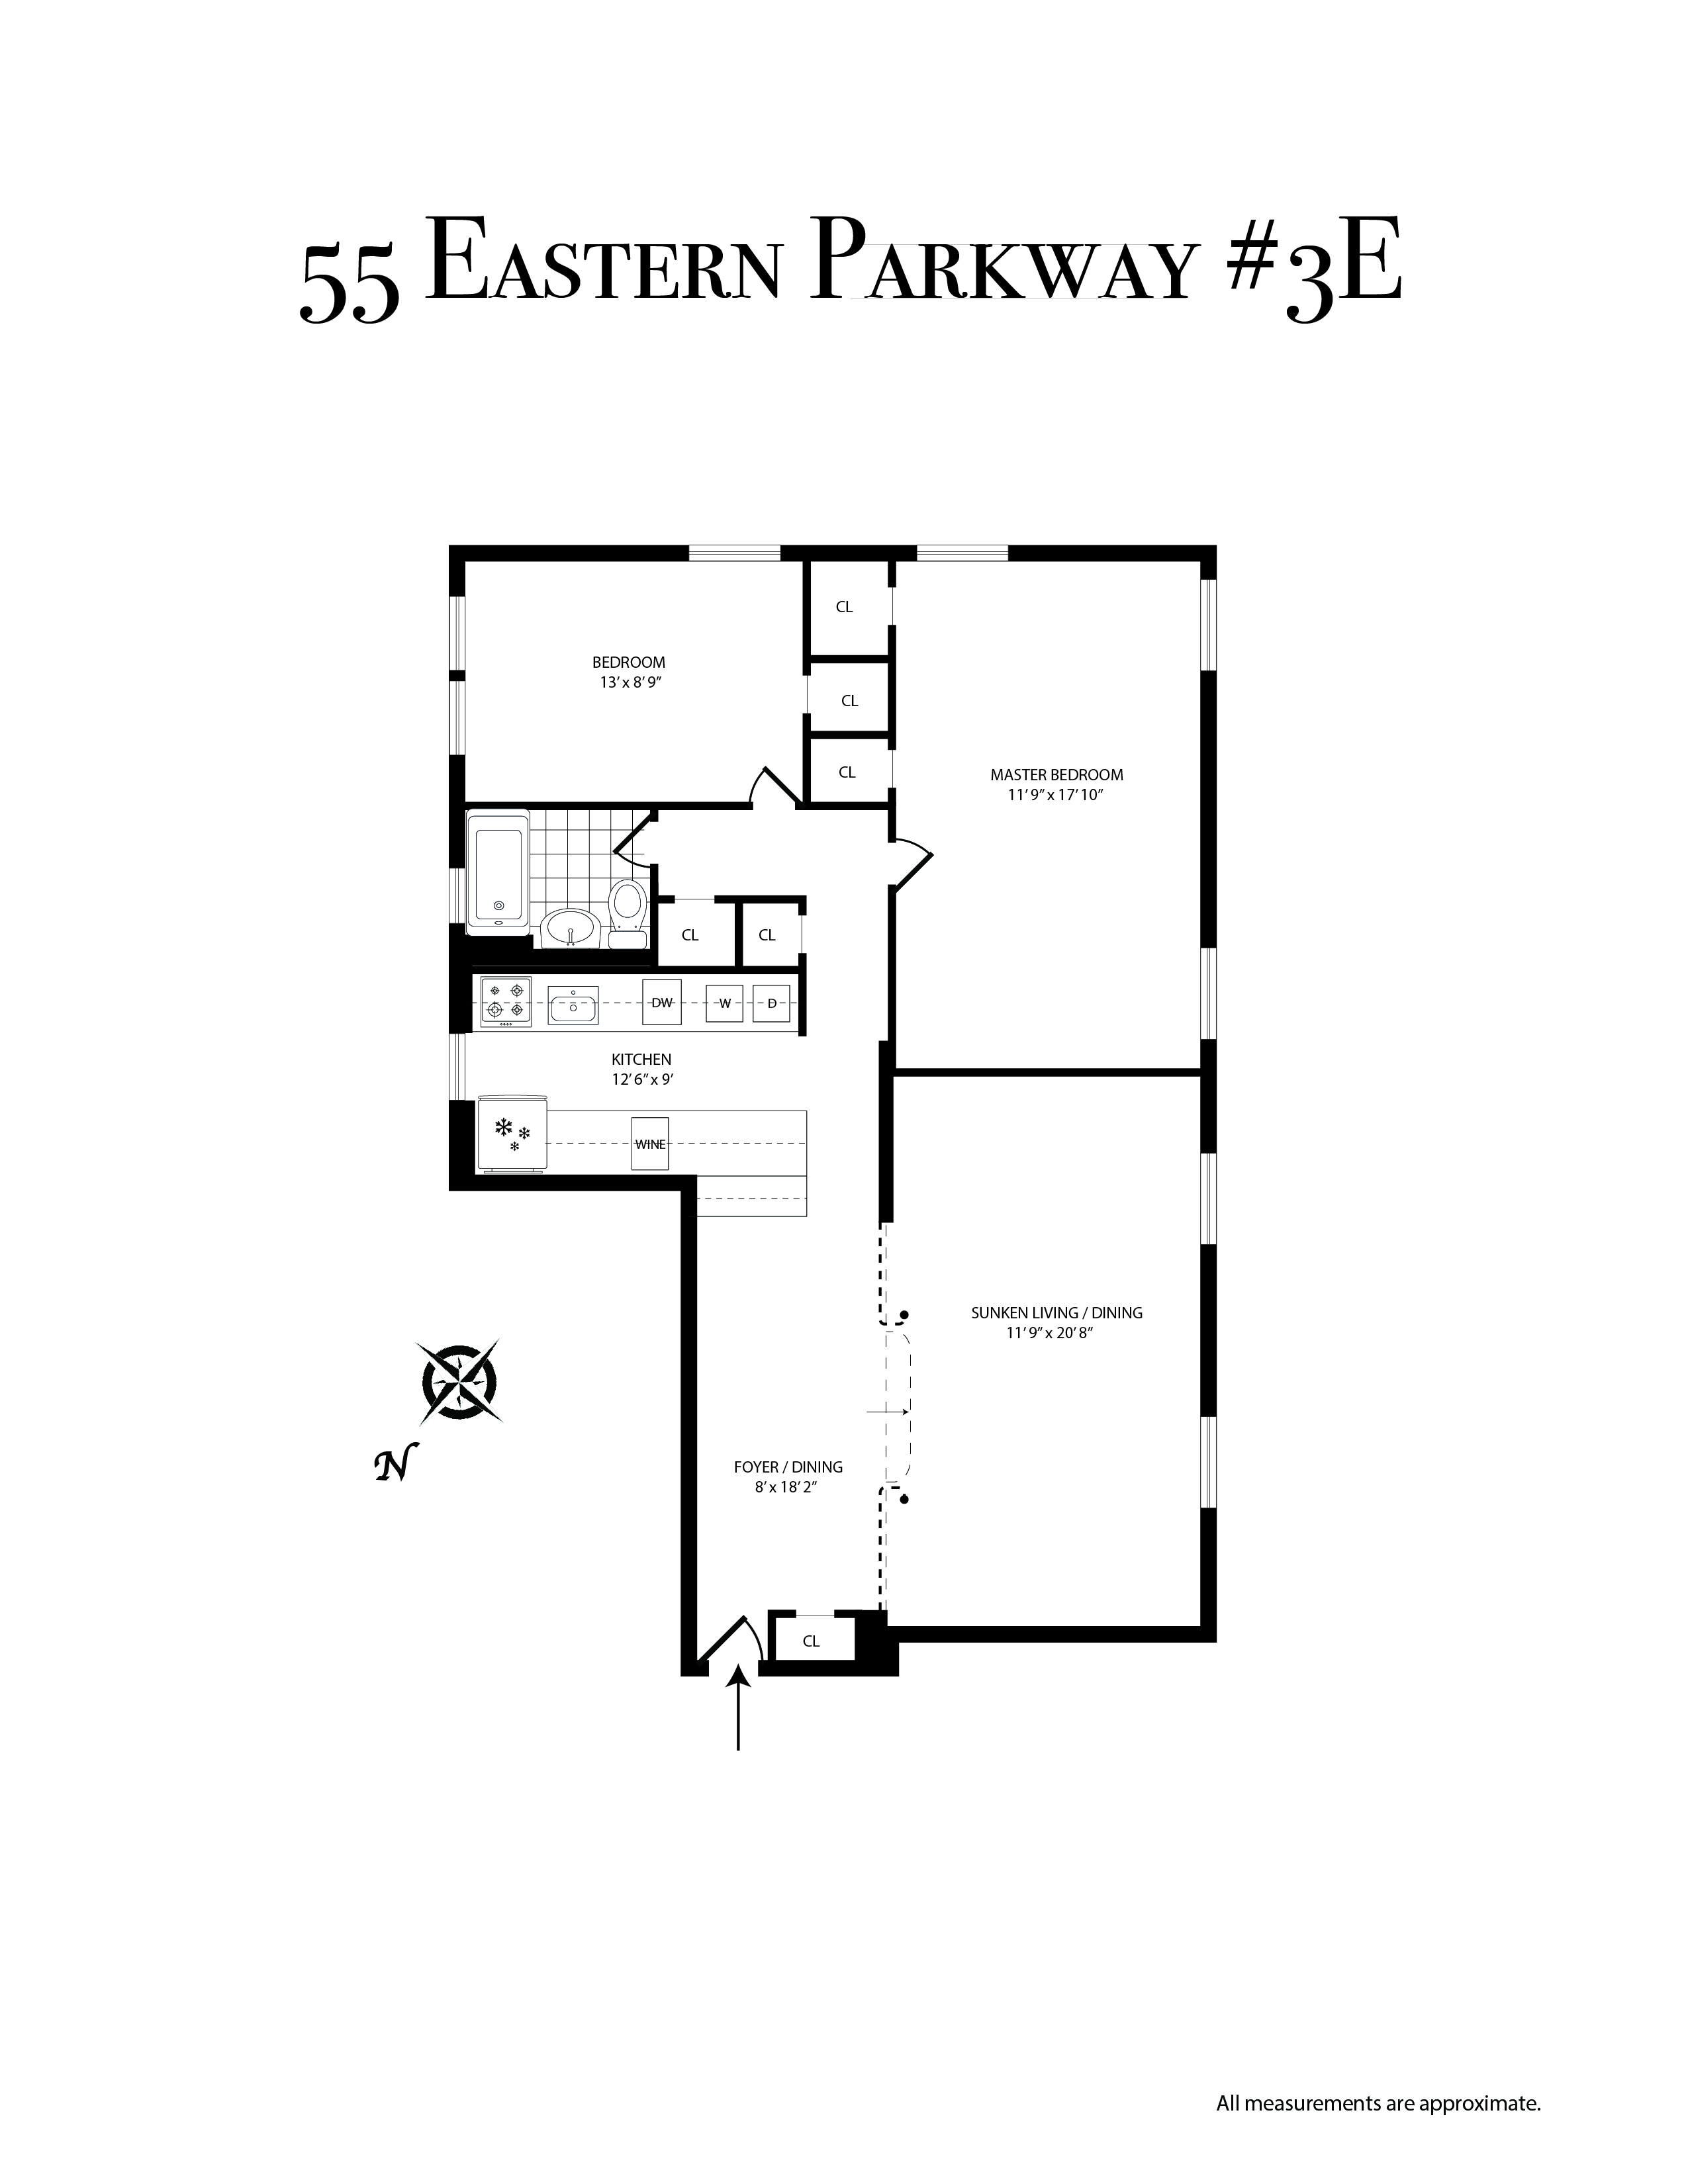 Floorplan of 55 Eastern Pkwy